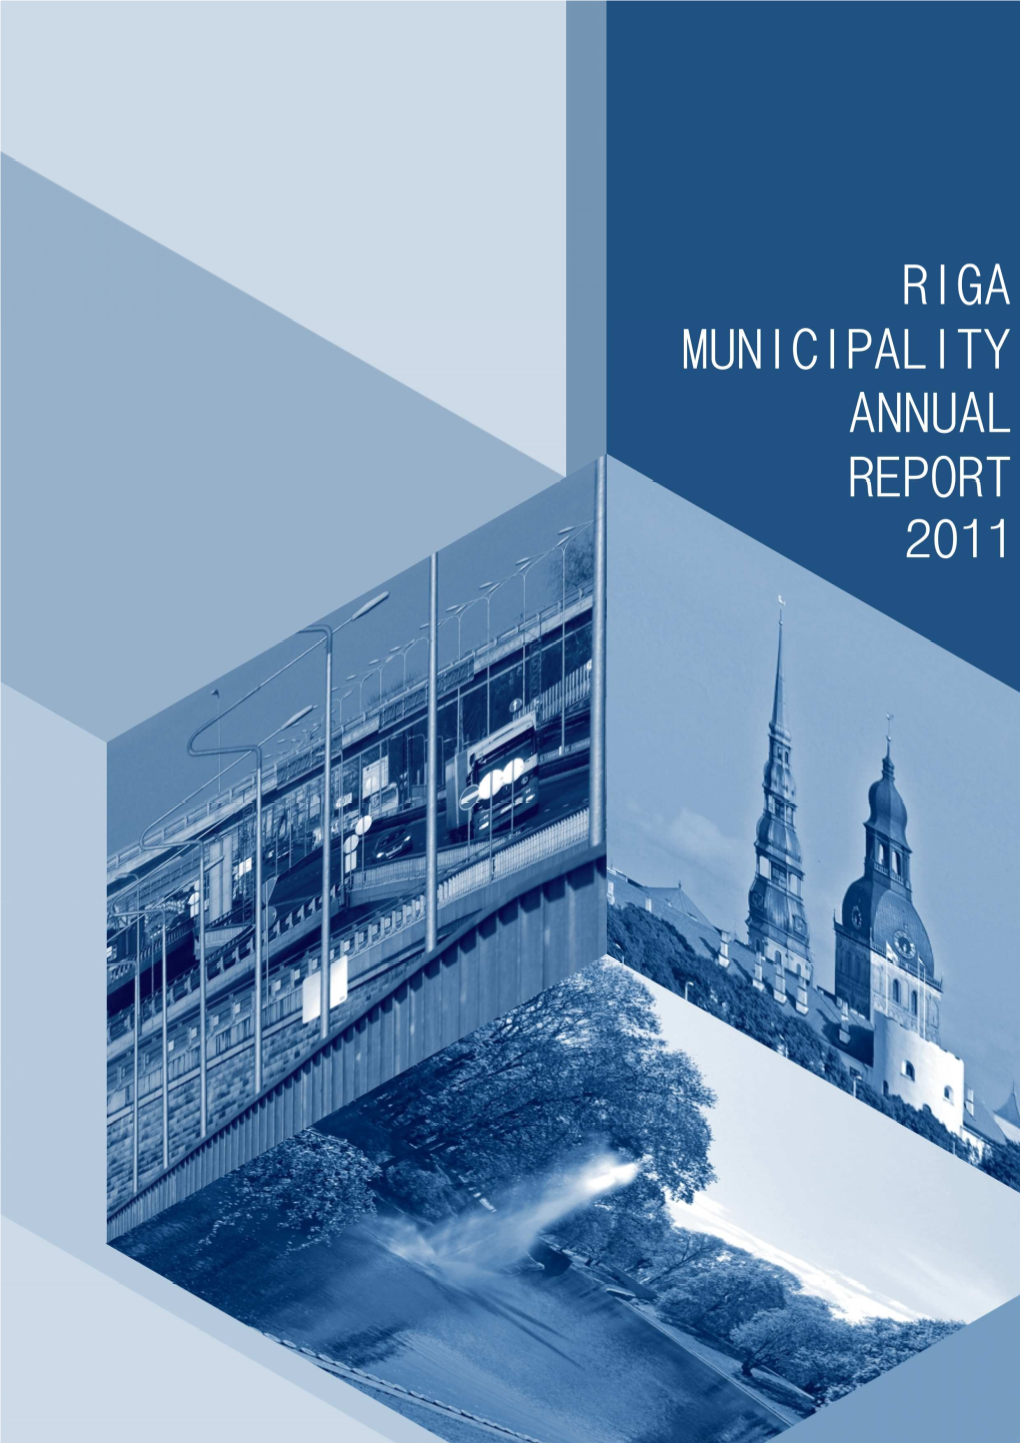 Riga Municipality Annual Report 2011